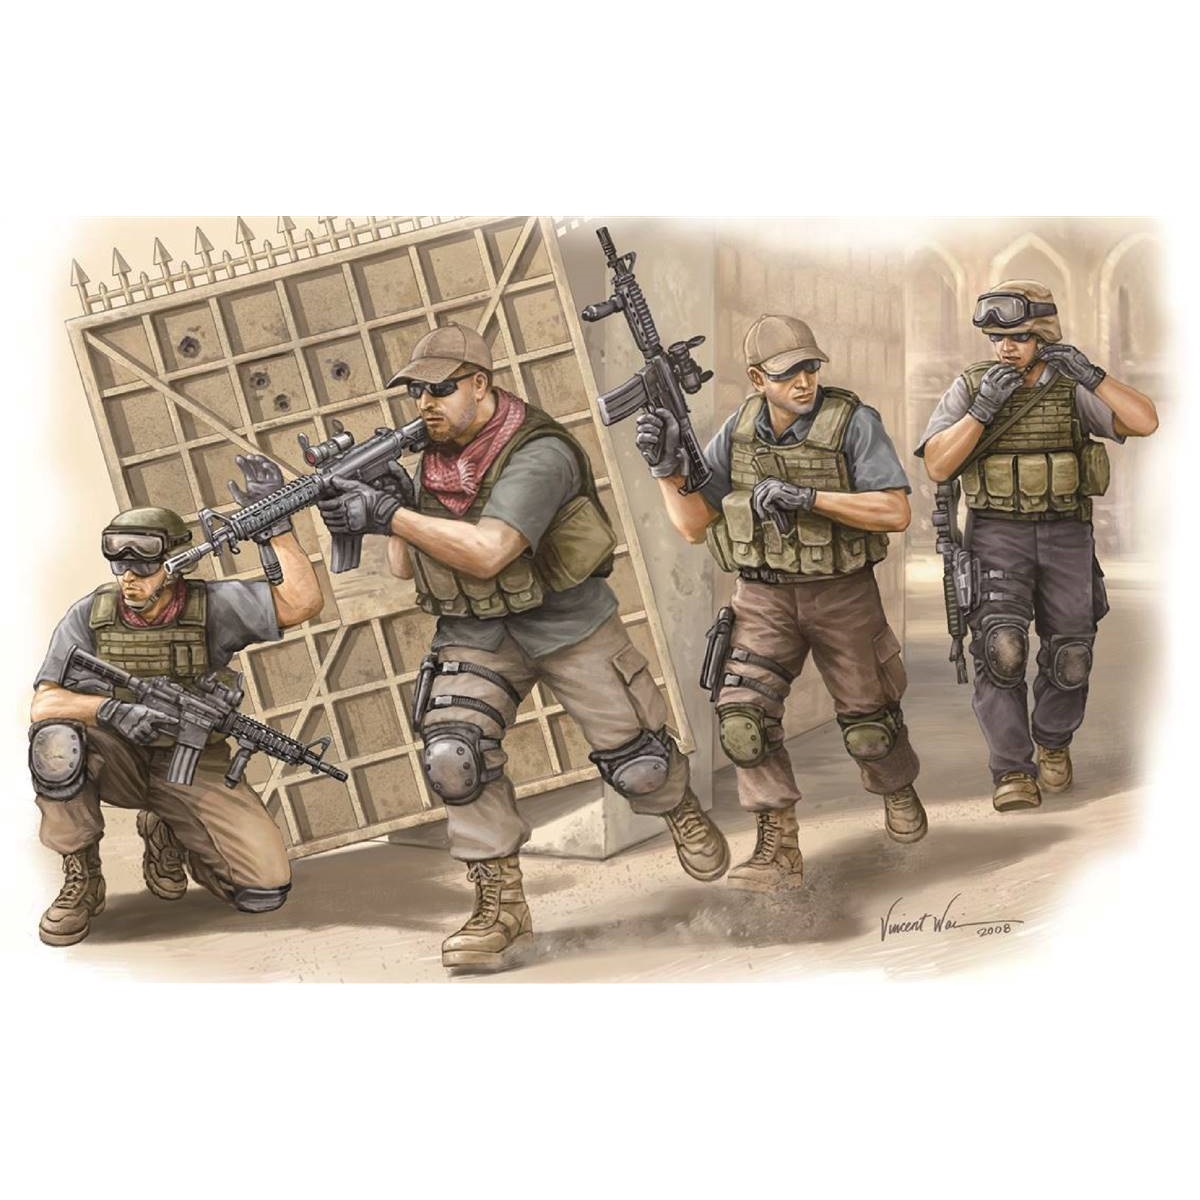 PMC Assault Team